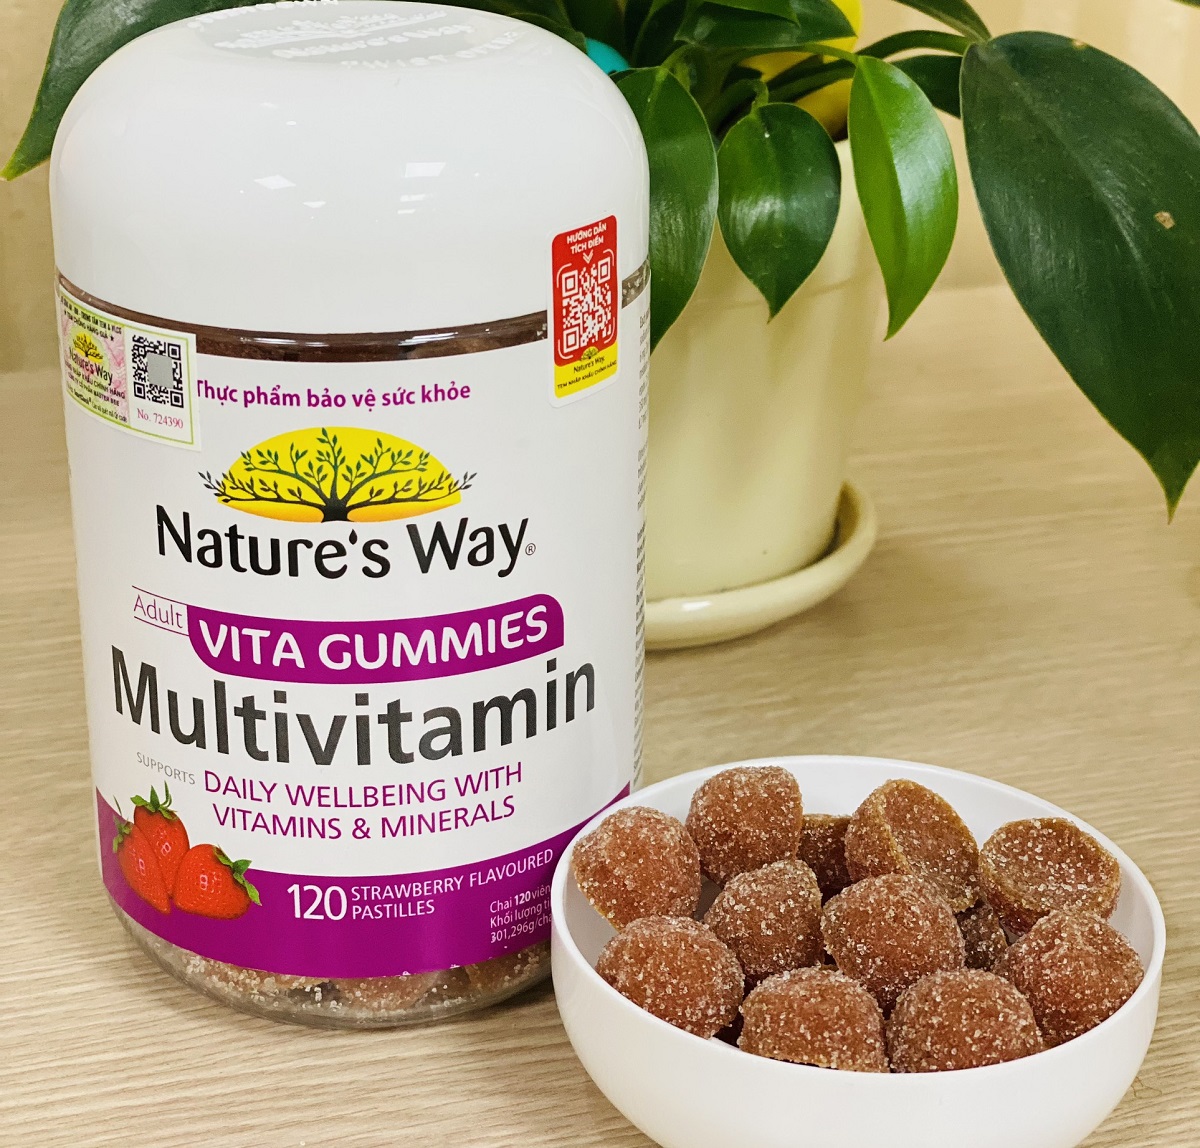 Nature’s Way Vita Gumies Multivitamin – Bổ sung vitamin và khoáng chất thiết yếu cho cơ thể (Hộp 120 viên)